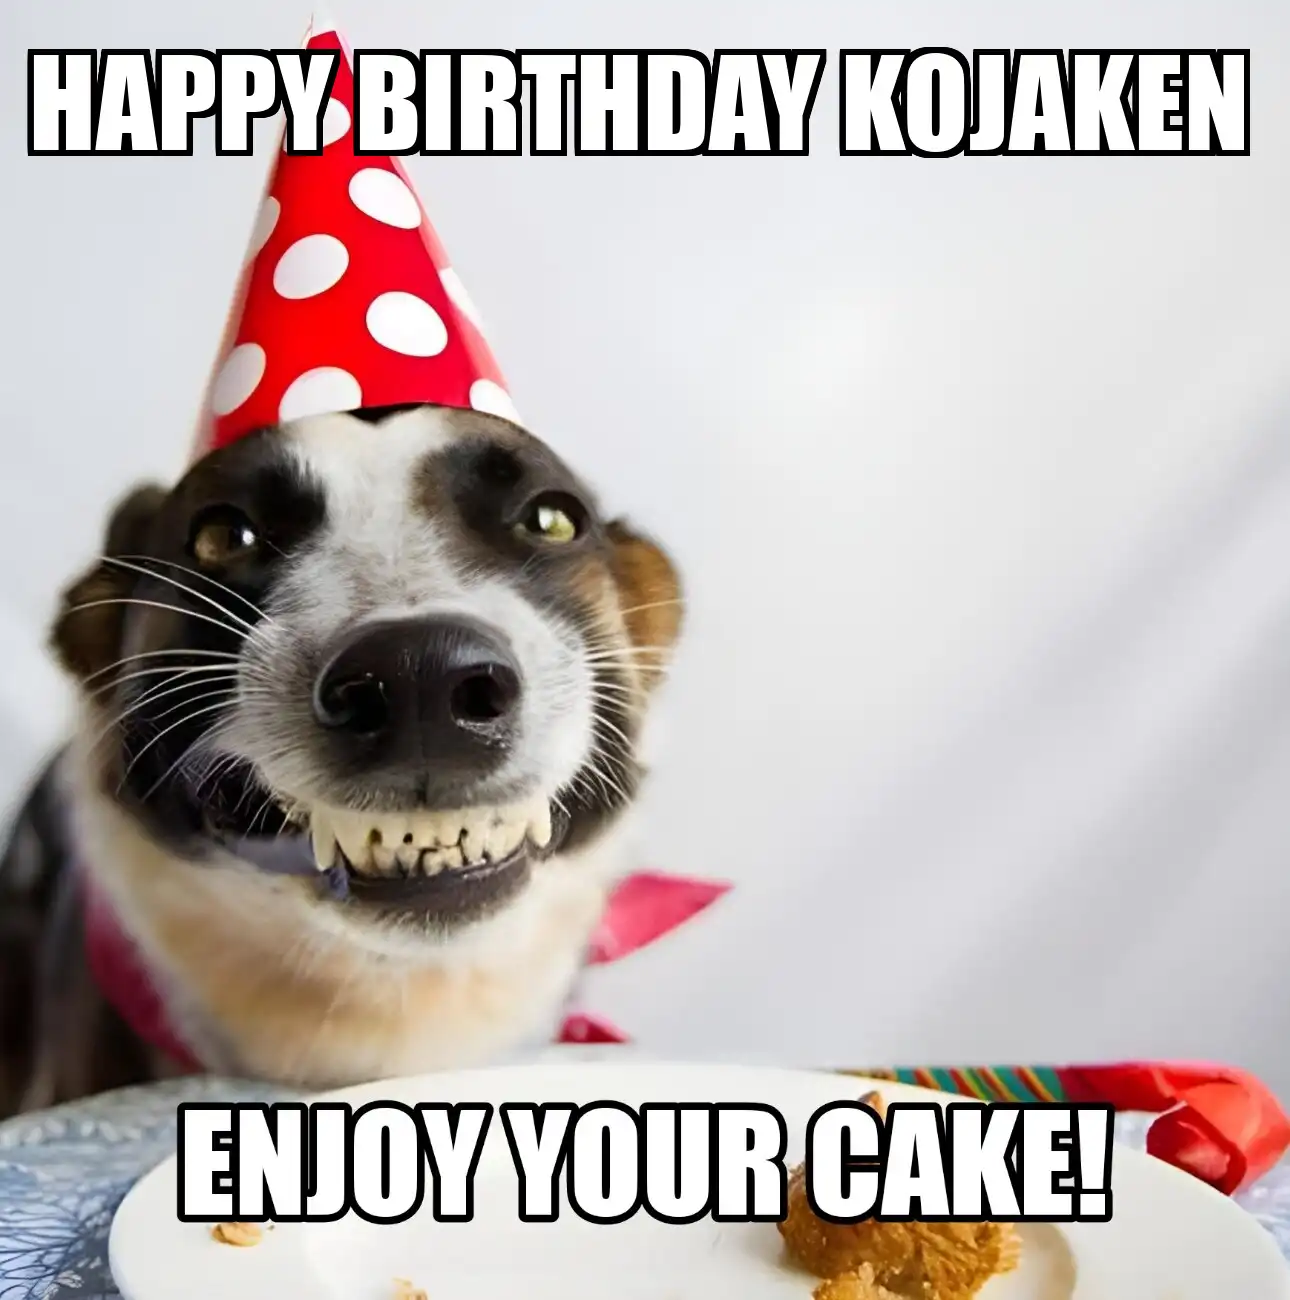 Happy Birthday Kojaken Enjoy Your Cake Dog Meme